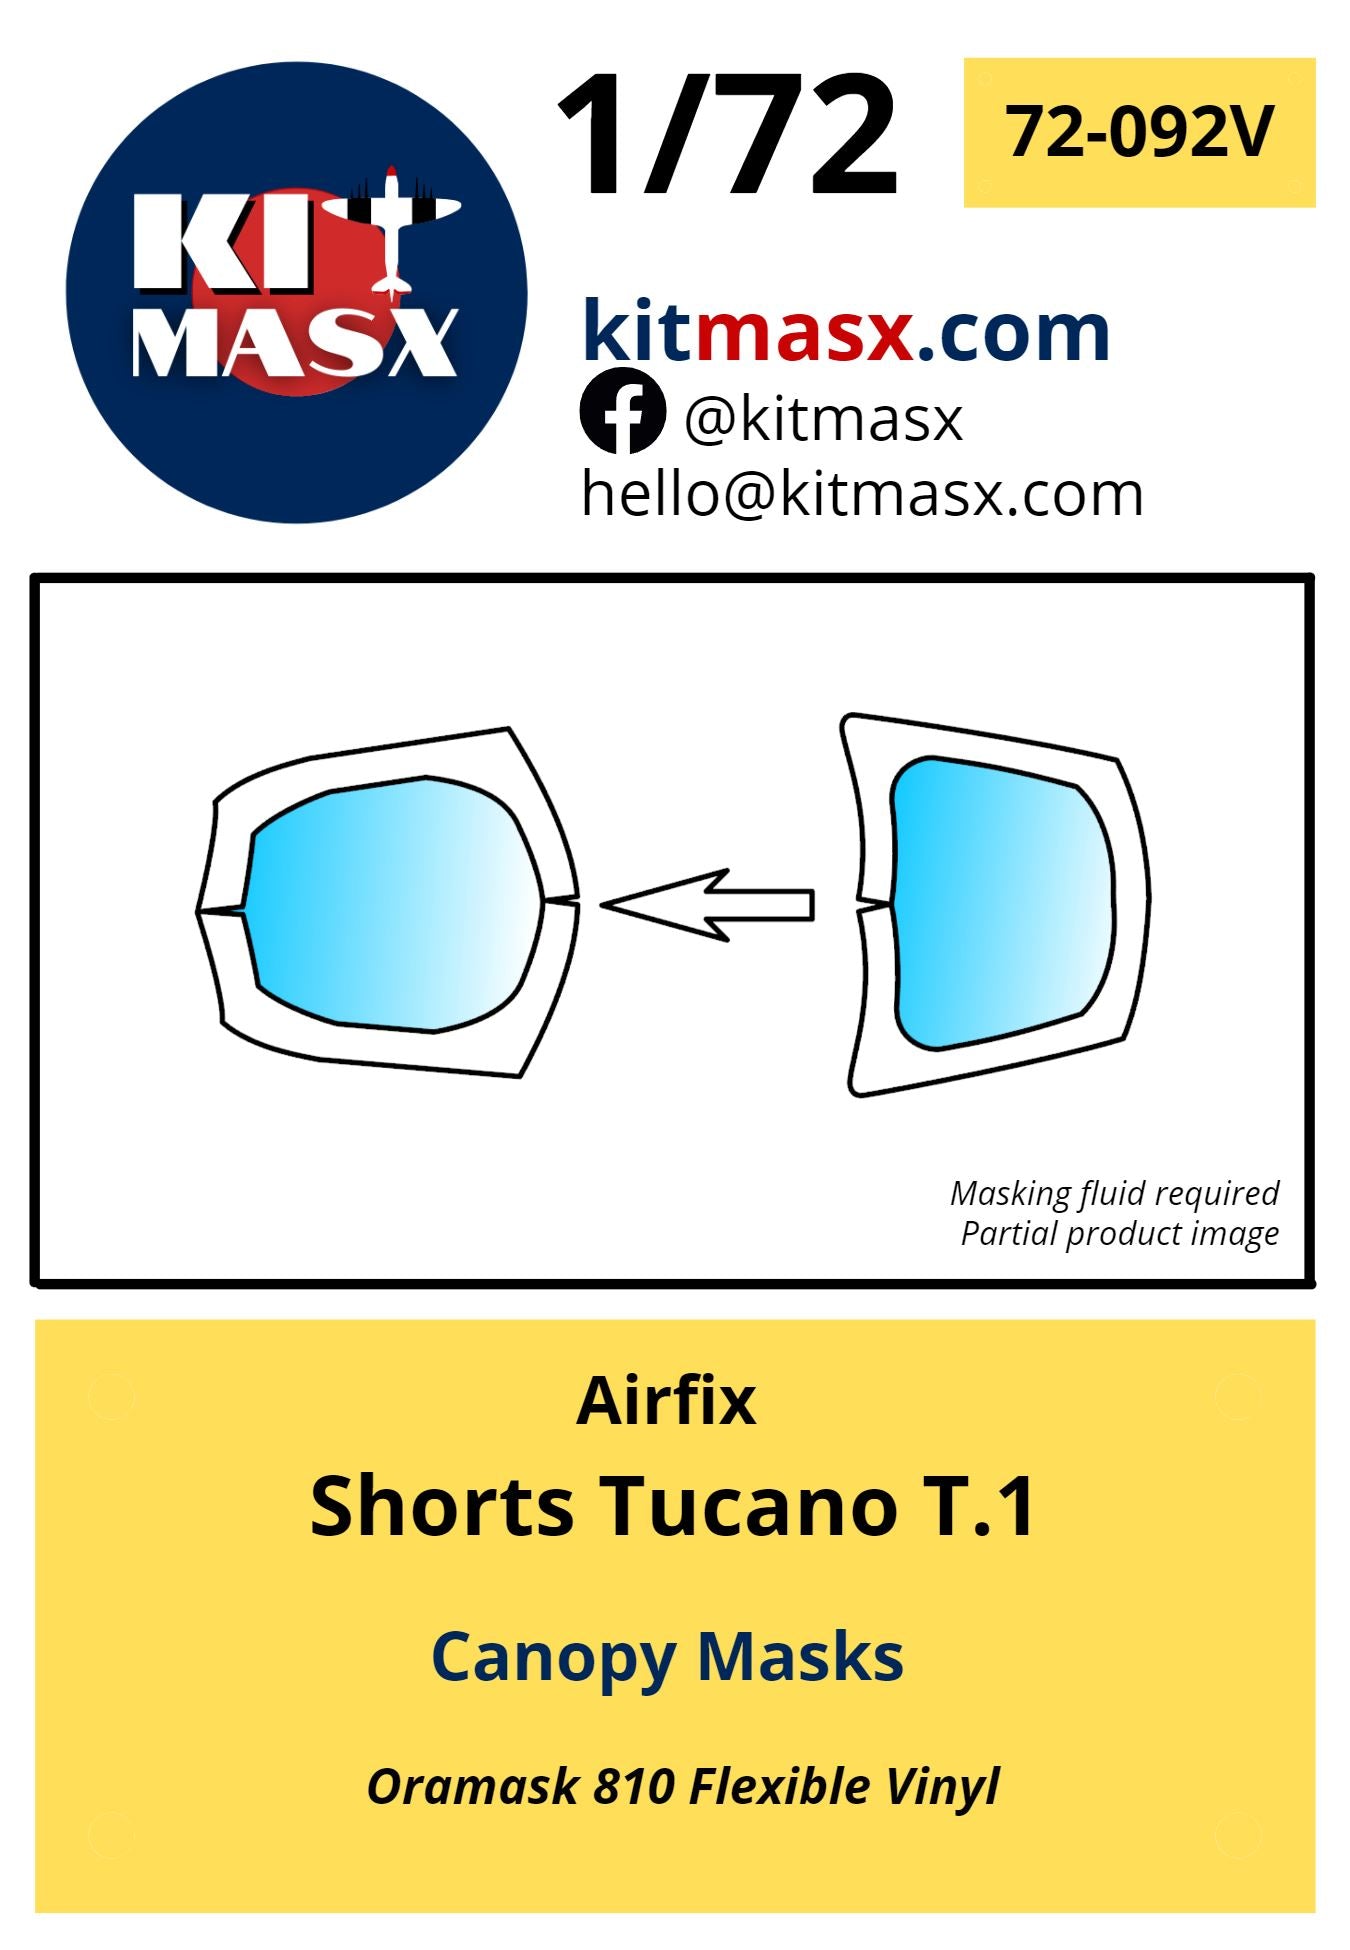 Airfix Shorts Tucano T.1 Canopy Masks Kit Masx 